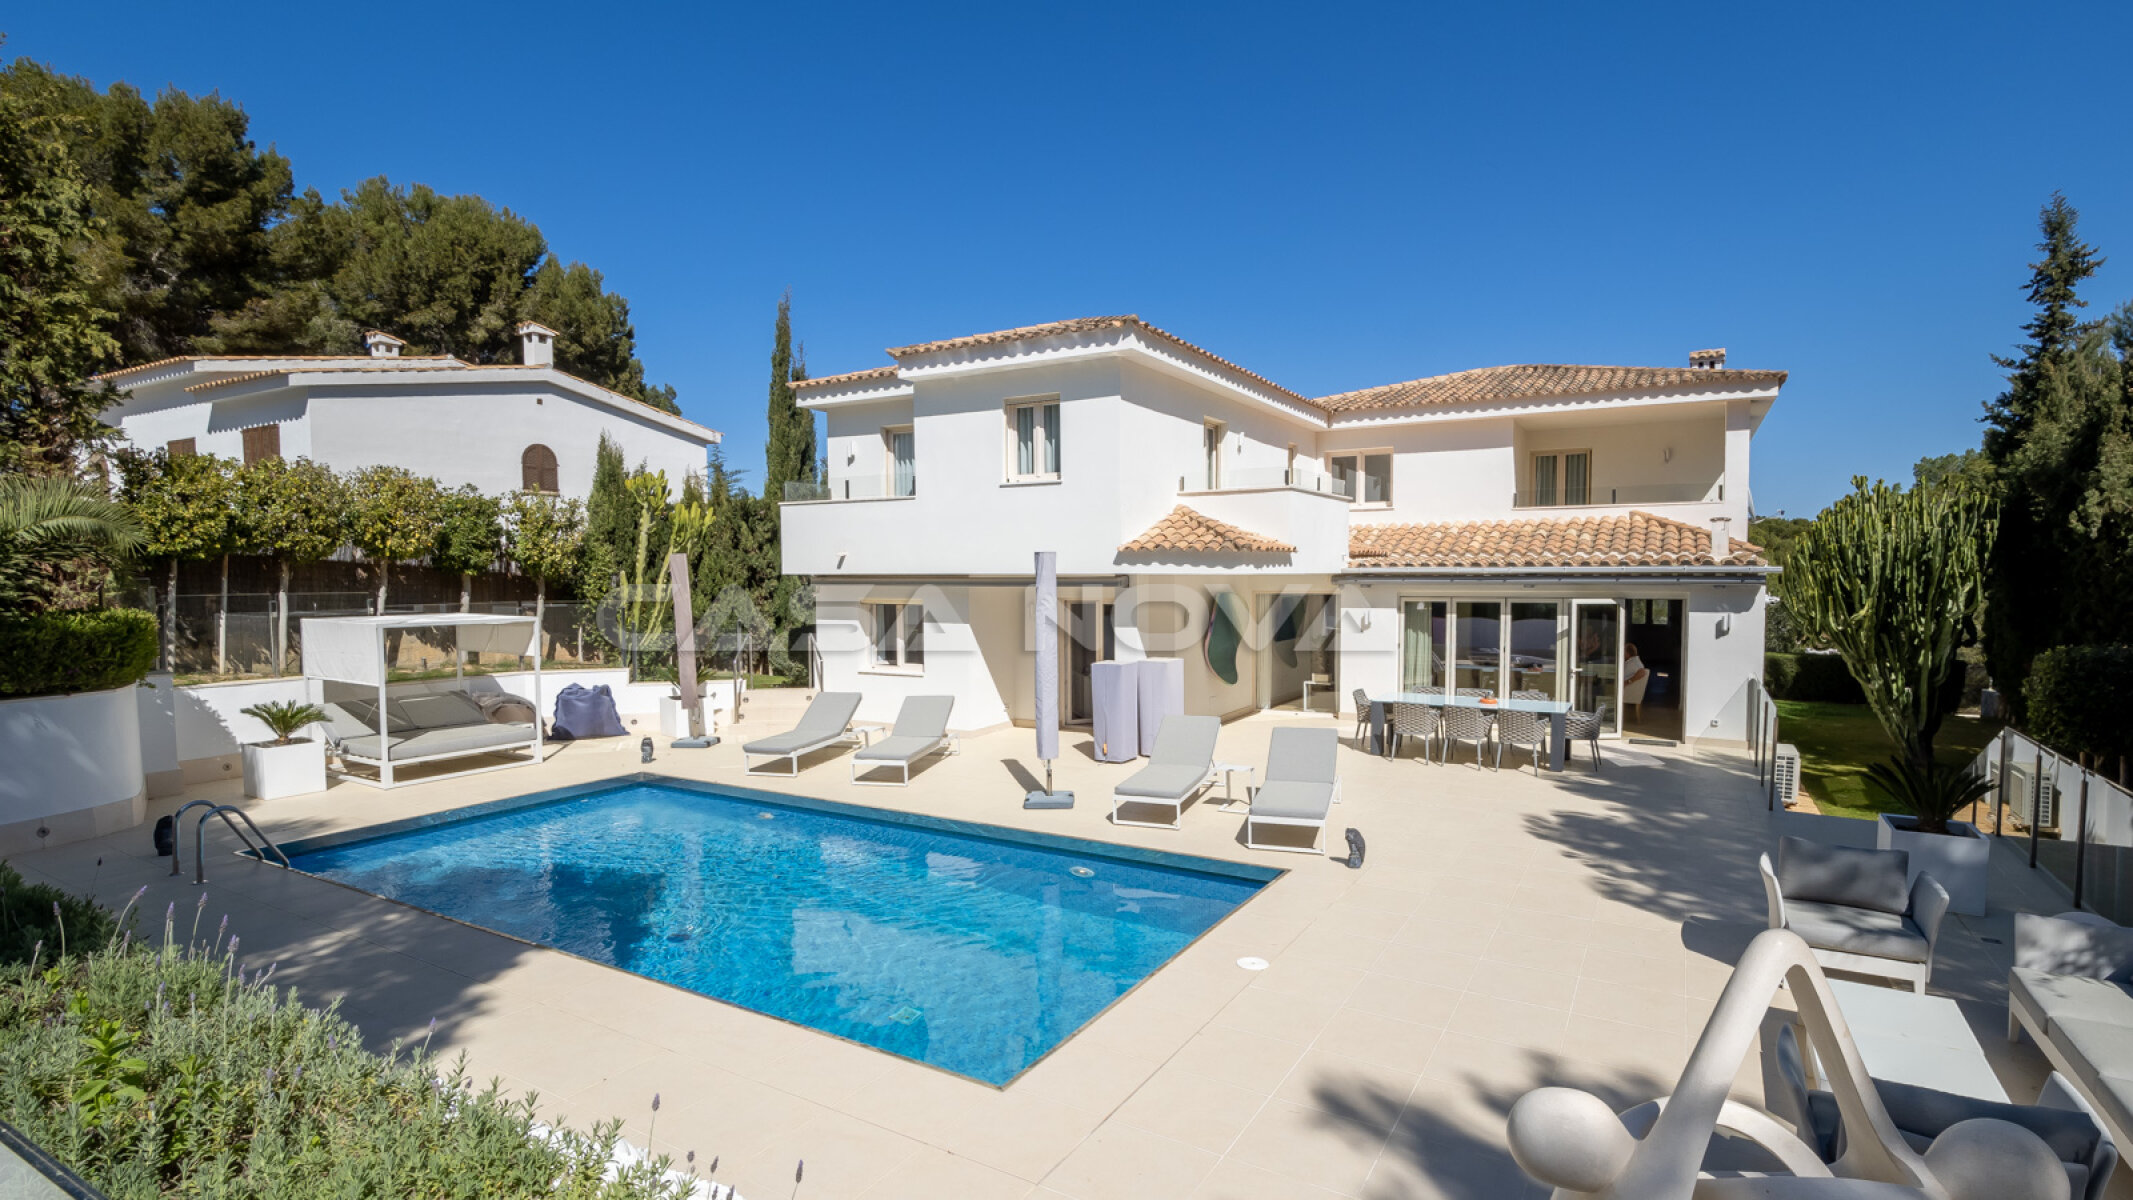 Id�lica villa en Mallorca con piscina y terraza